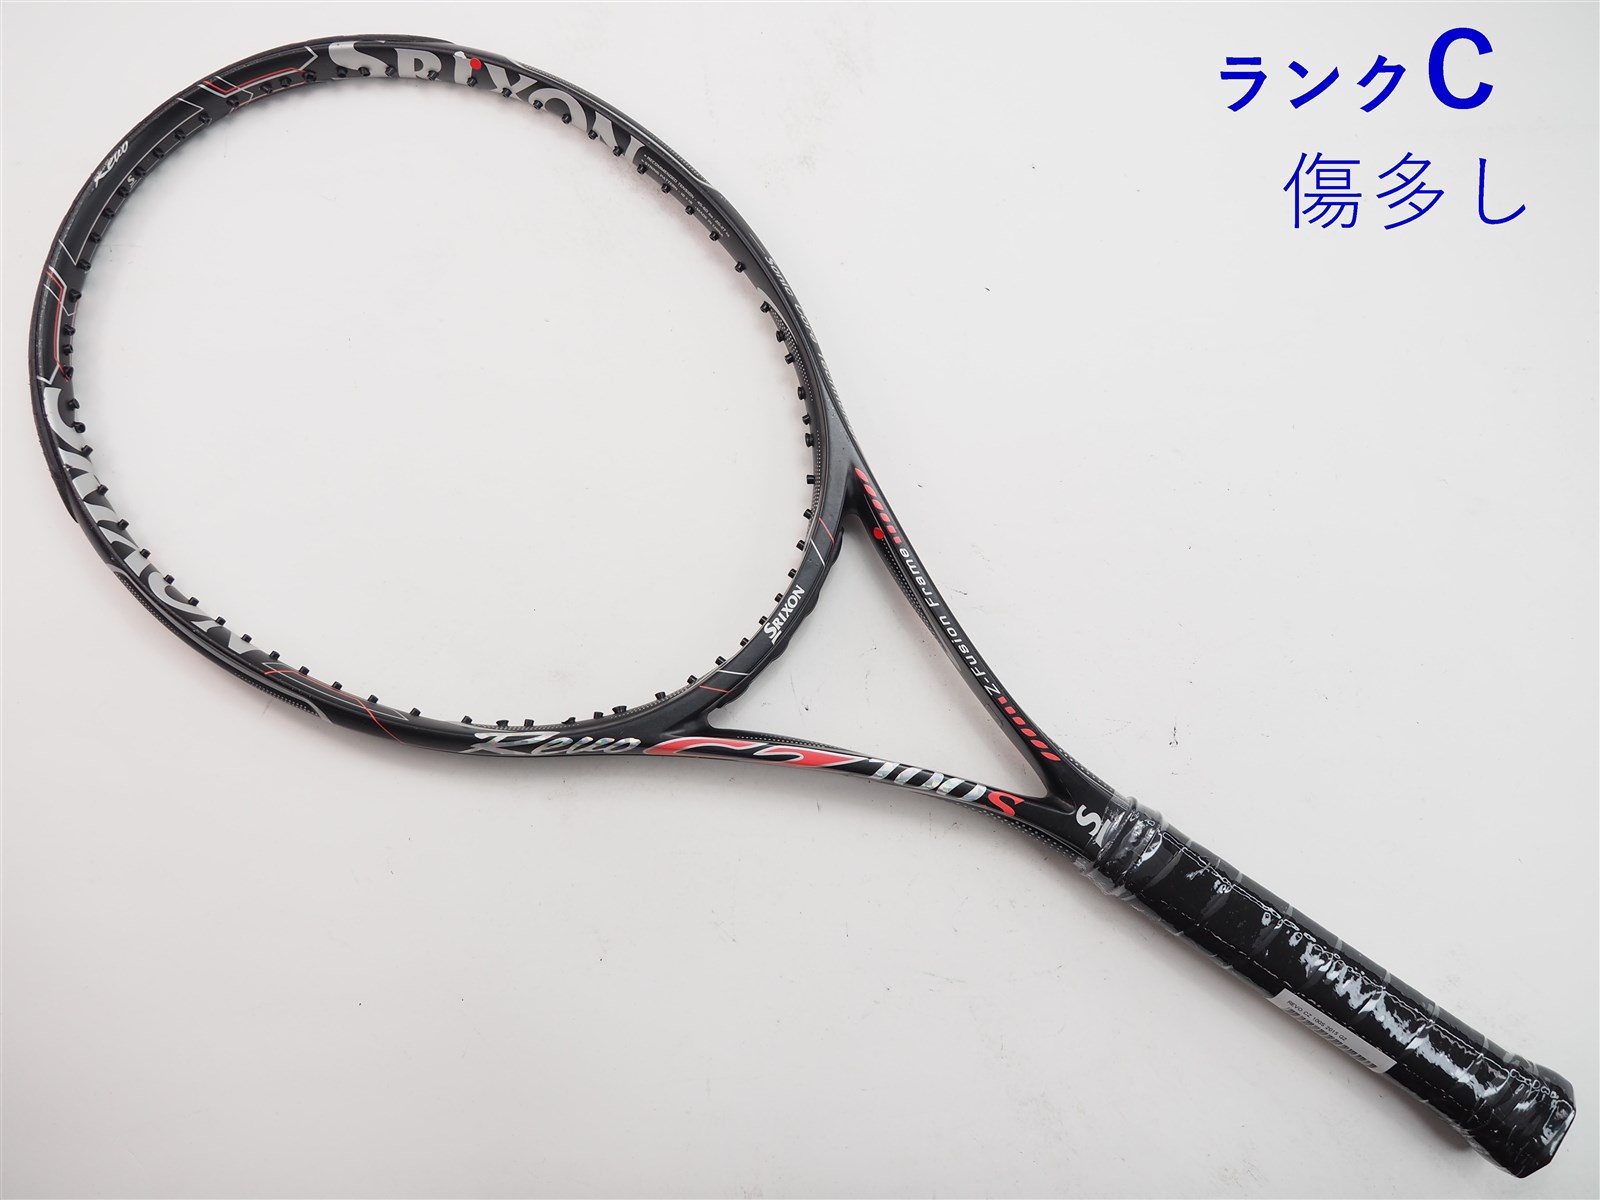 スリクソン SRIXSON Rebo CS10.0 G2 ブラック×ピンク - テニス